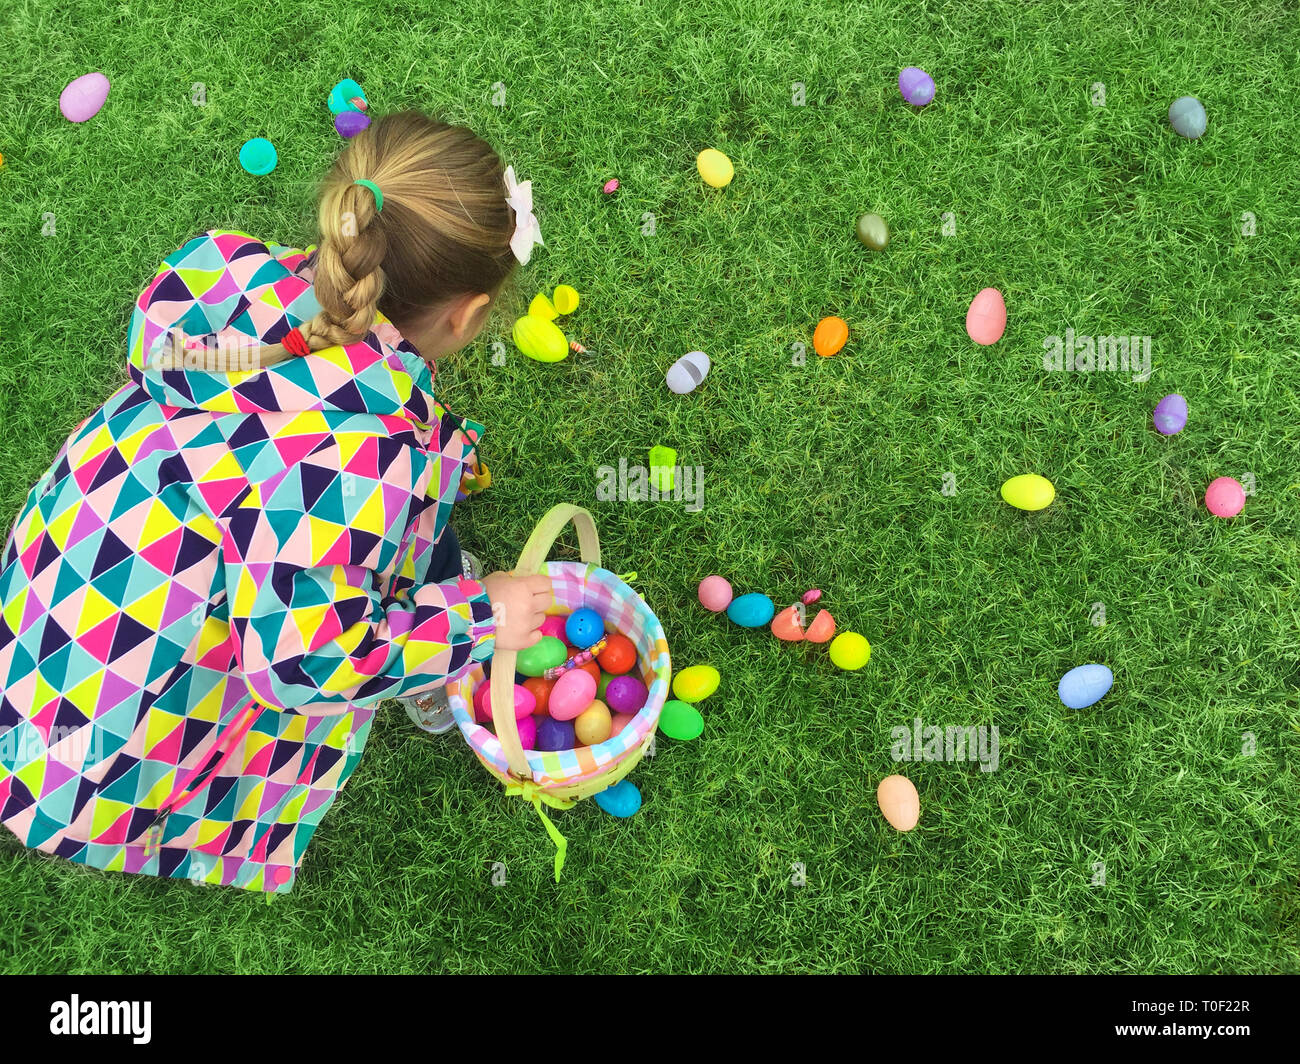 La ragazza da torna su primi uovo di pasqua caccia raccolta uova colorate dall'erba verde Foto Stock